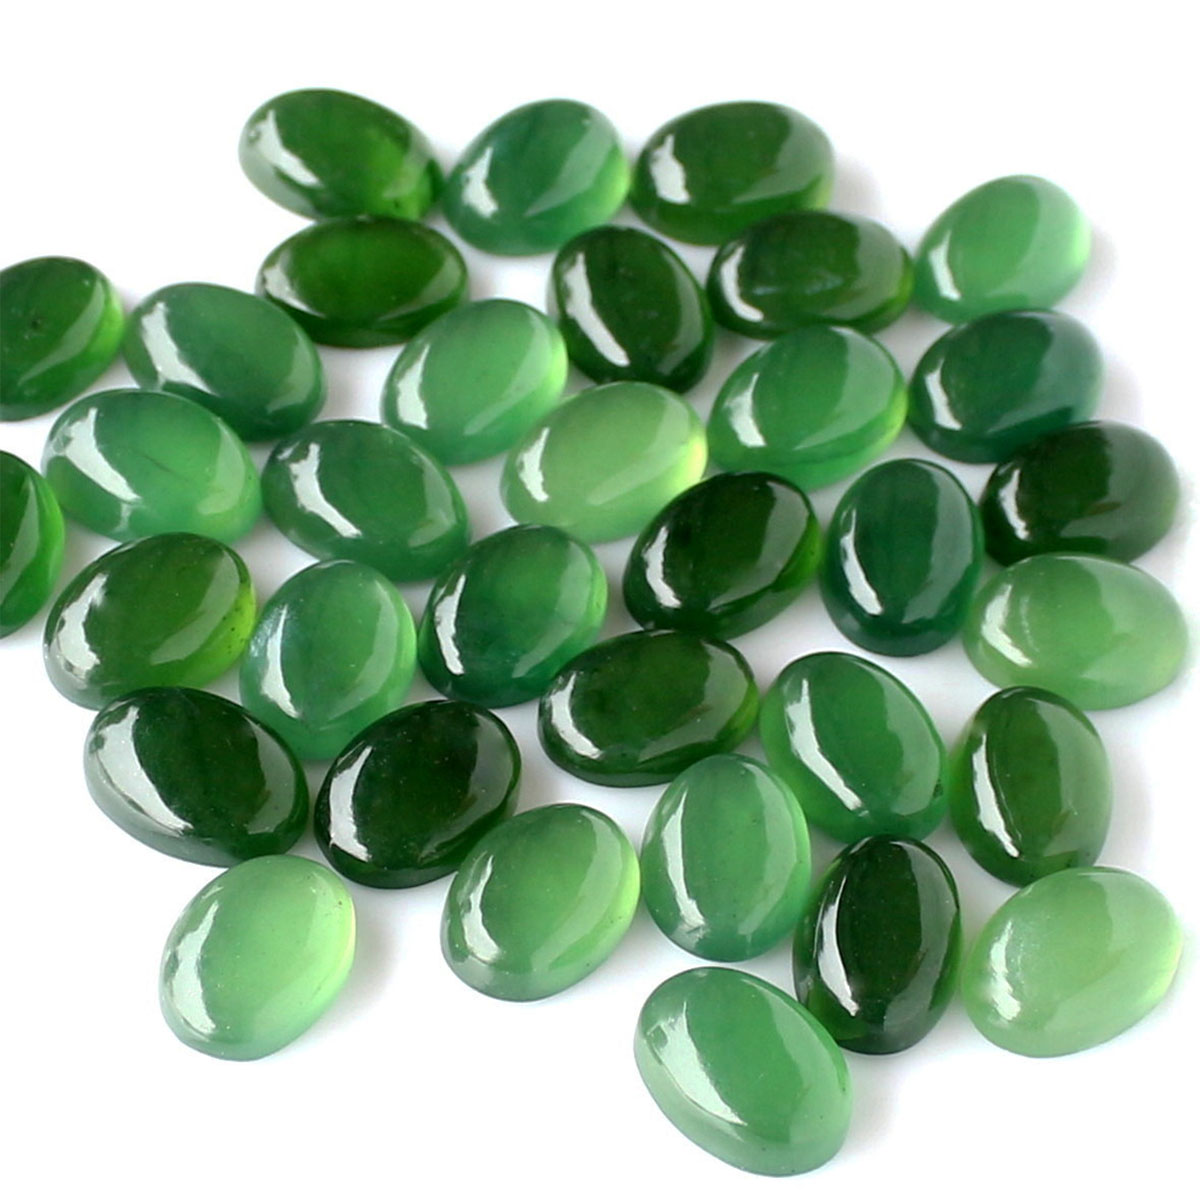 Calibrated jade cabochons